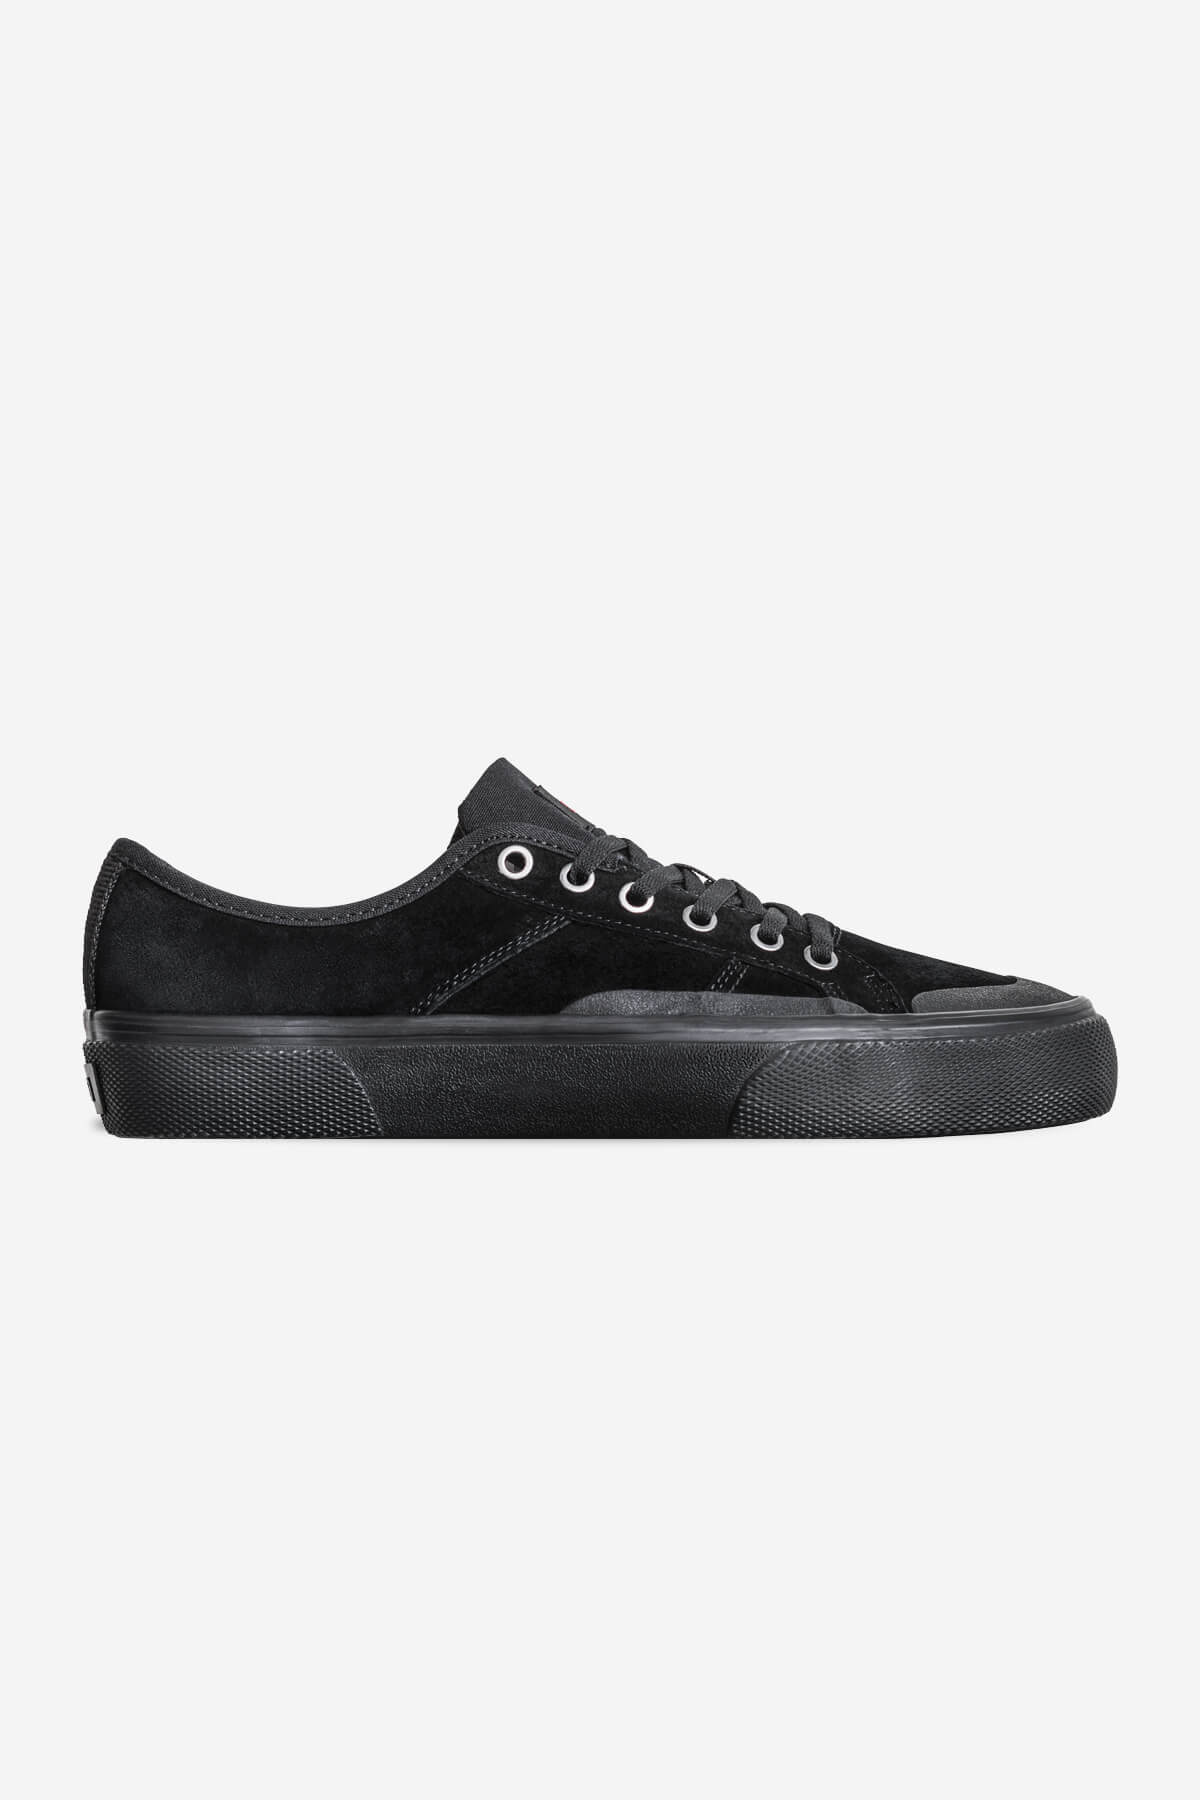 surplus zwart zwart wolverine skateboard schoenen